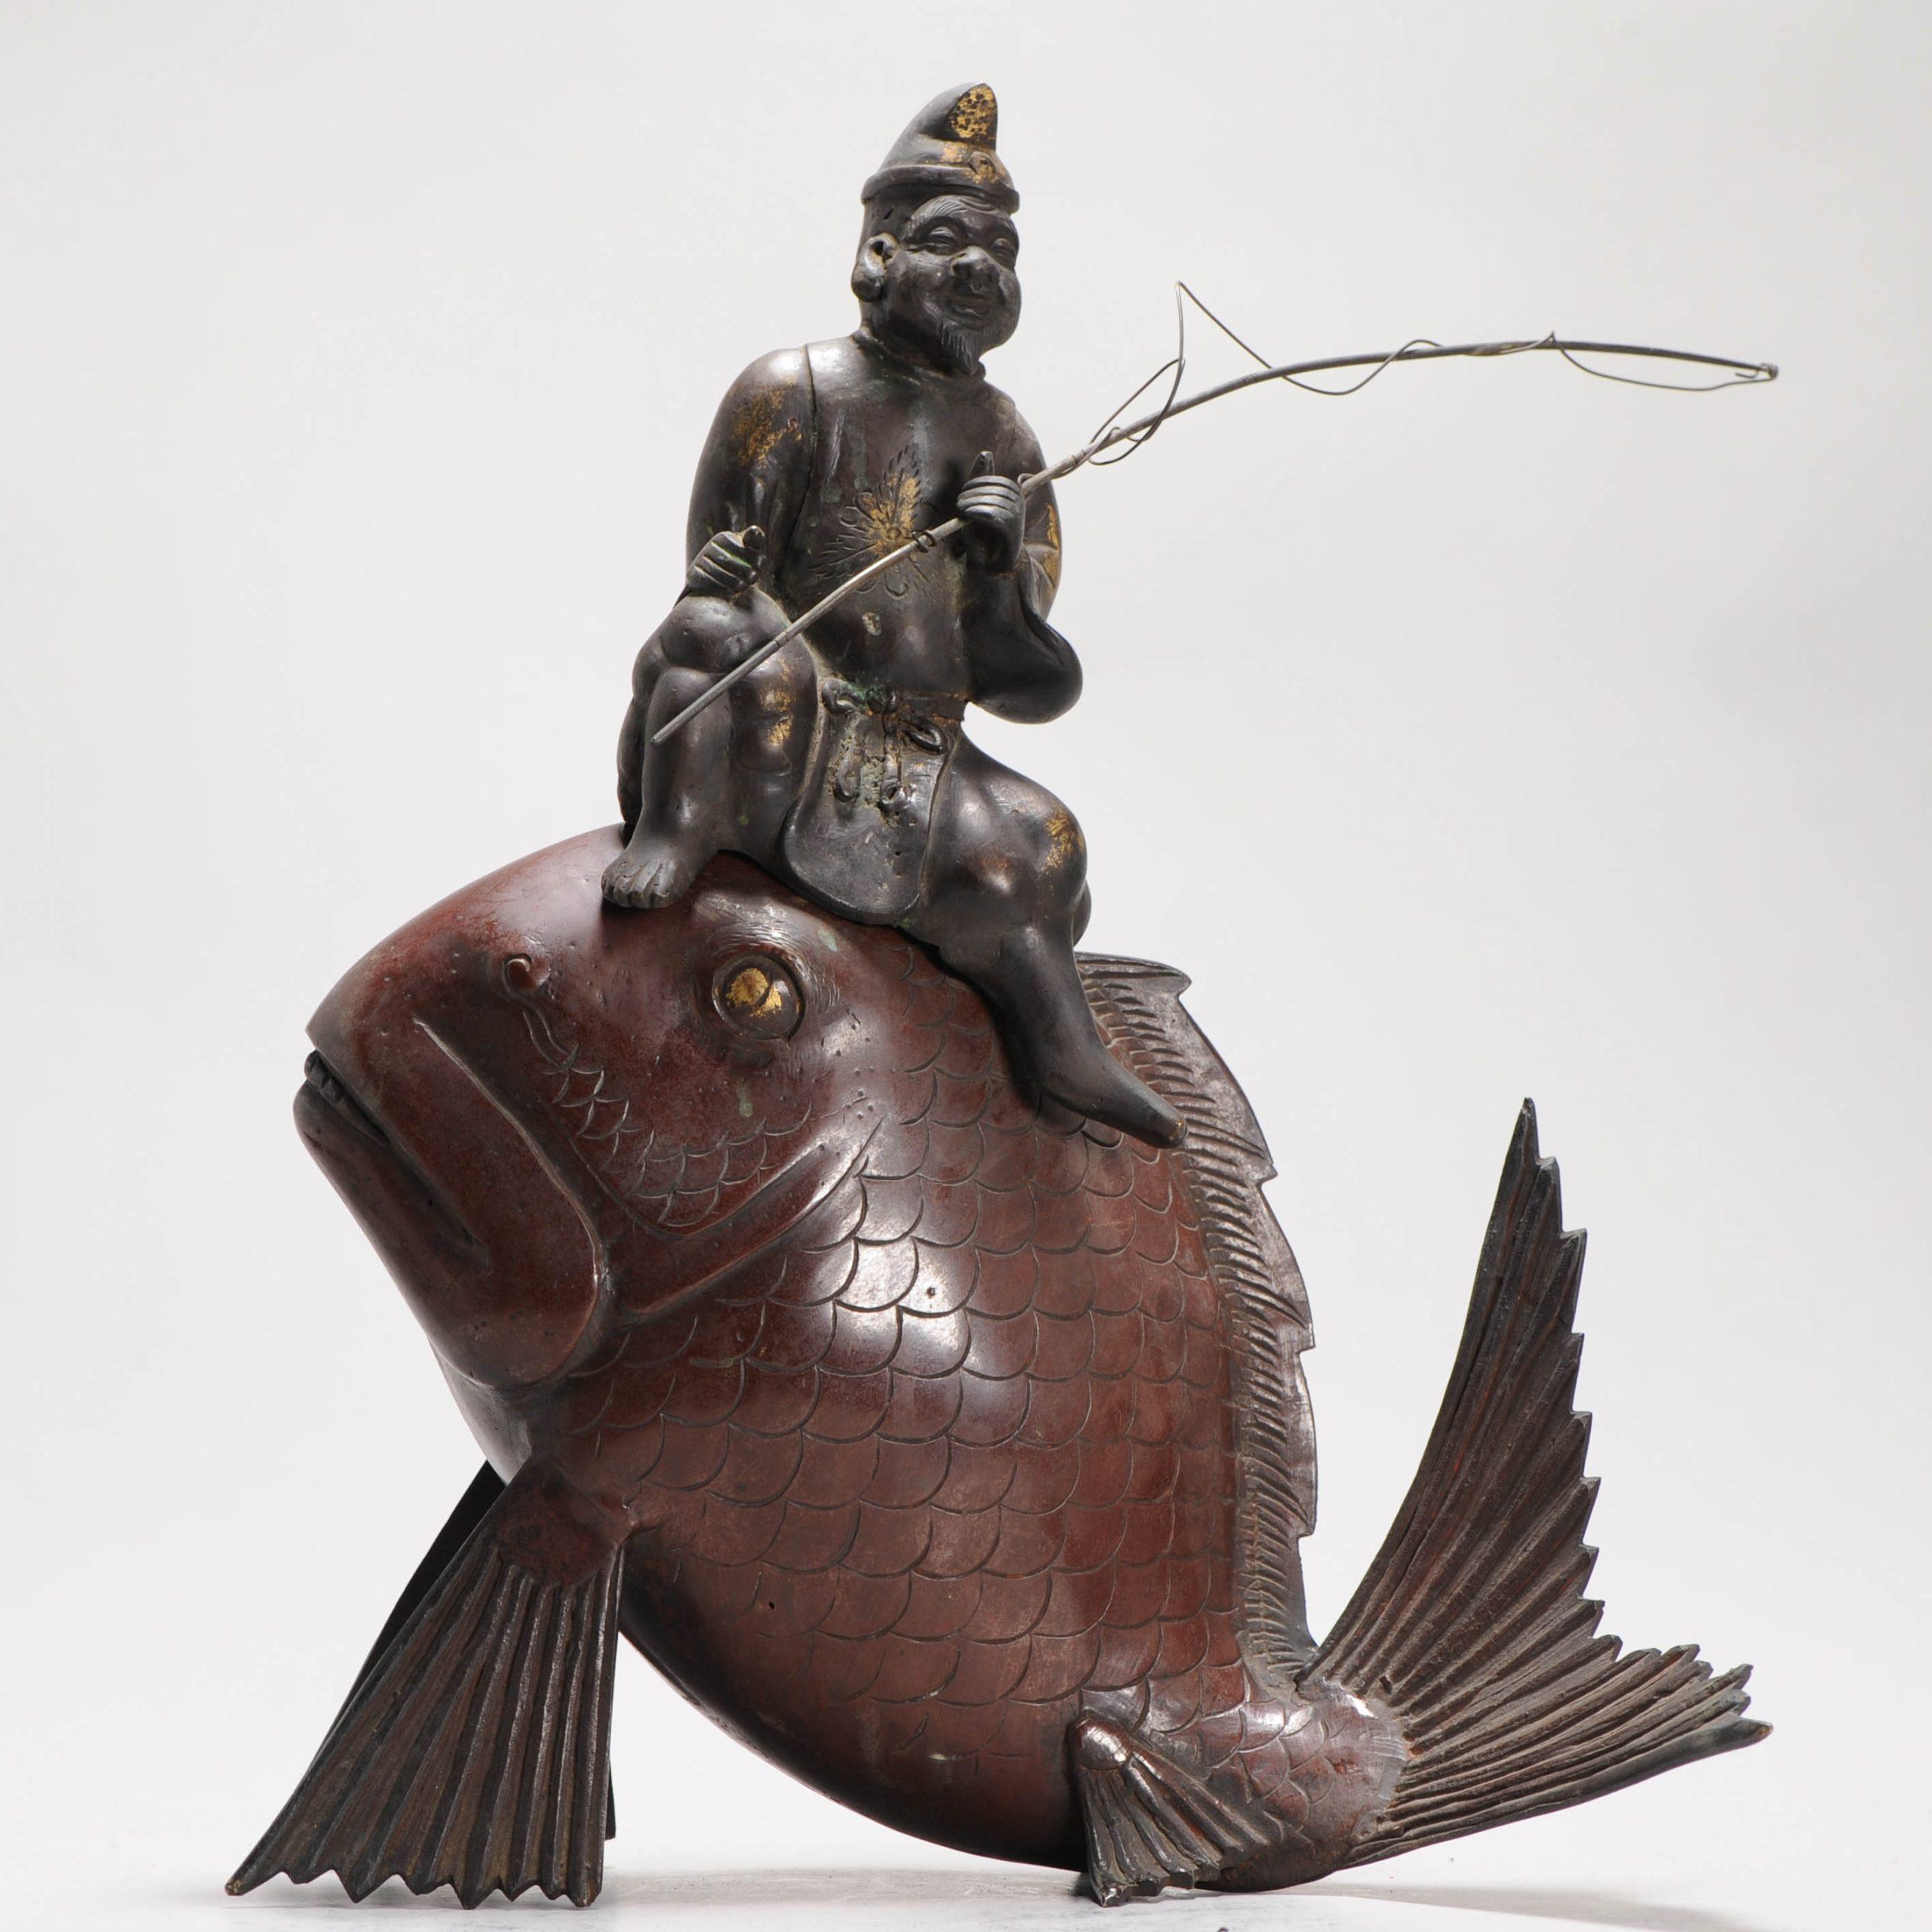 une très belle statue d'un pêcheur sur un poisson

Condit
40 x 35 cm. Bon état avec des signes d'usure.
Période
19ème siècle 